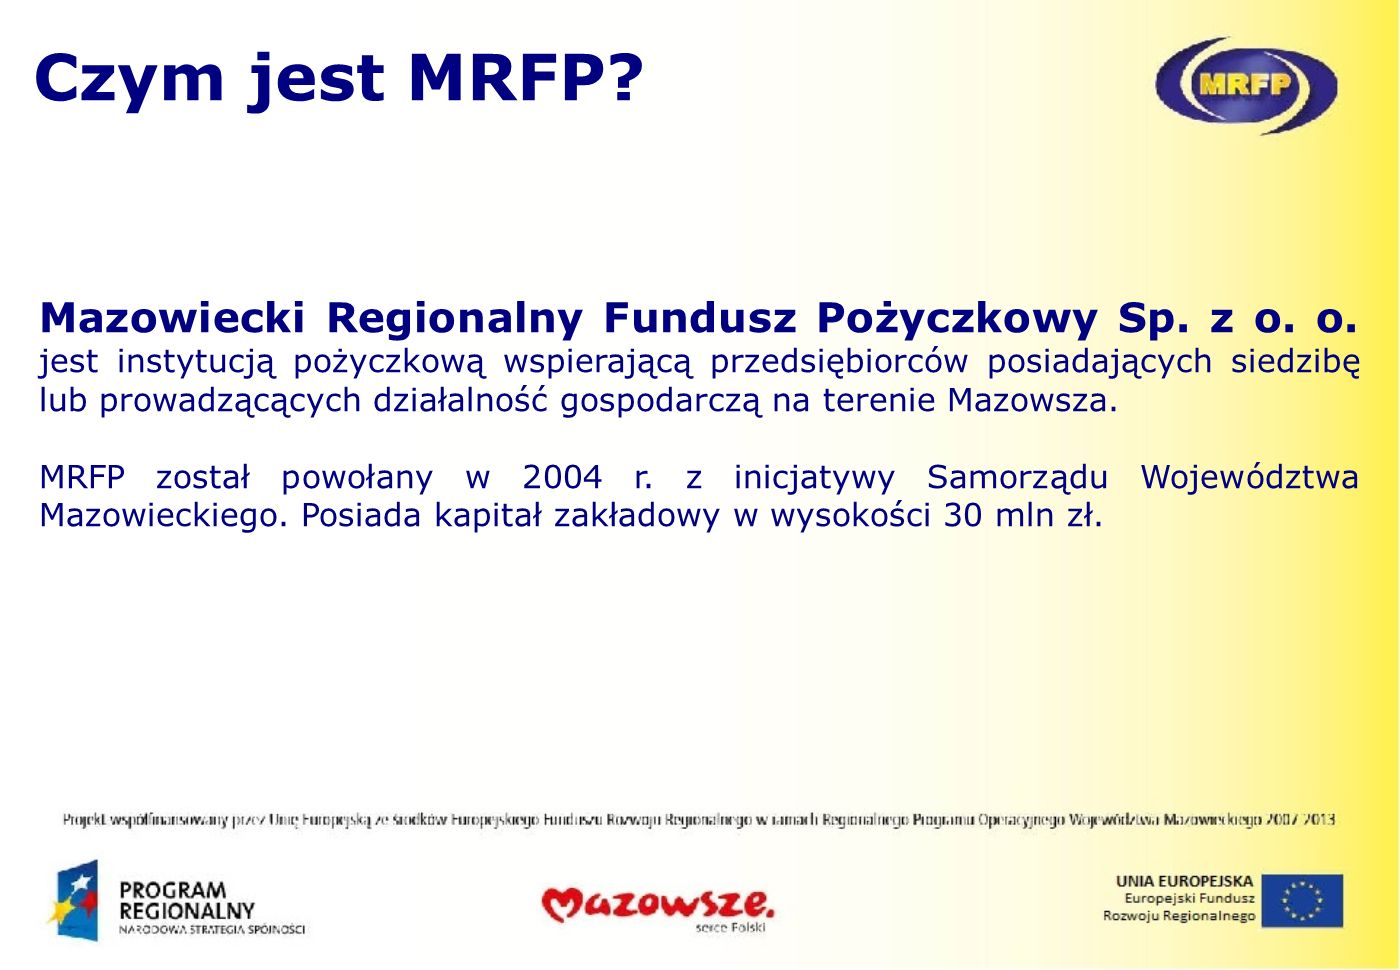 Czym jest MRFP